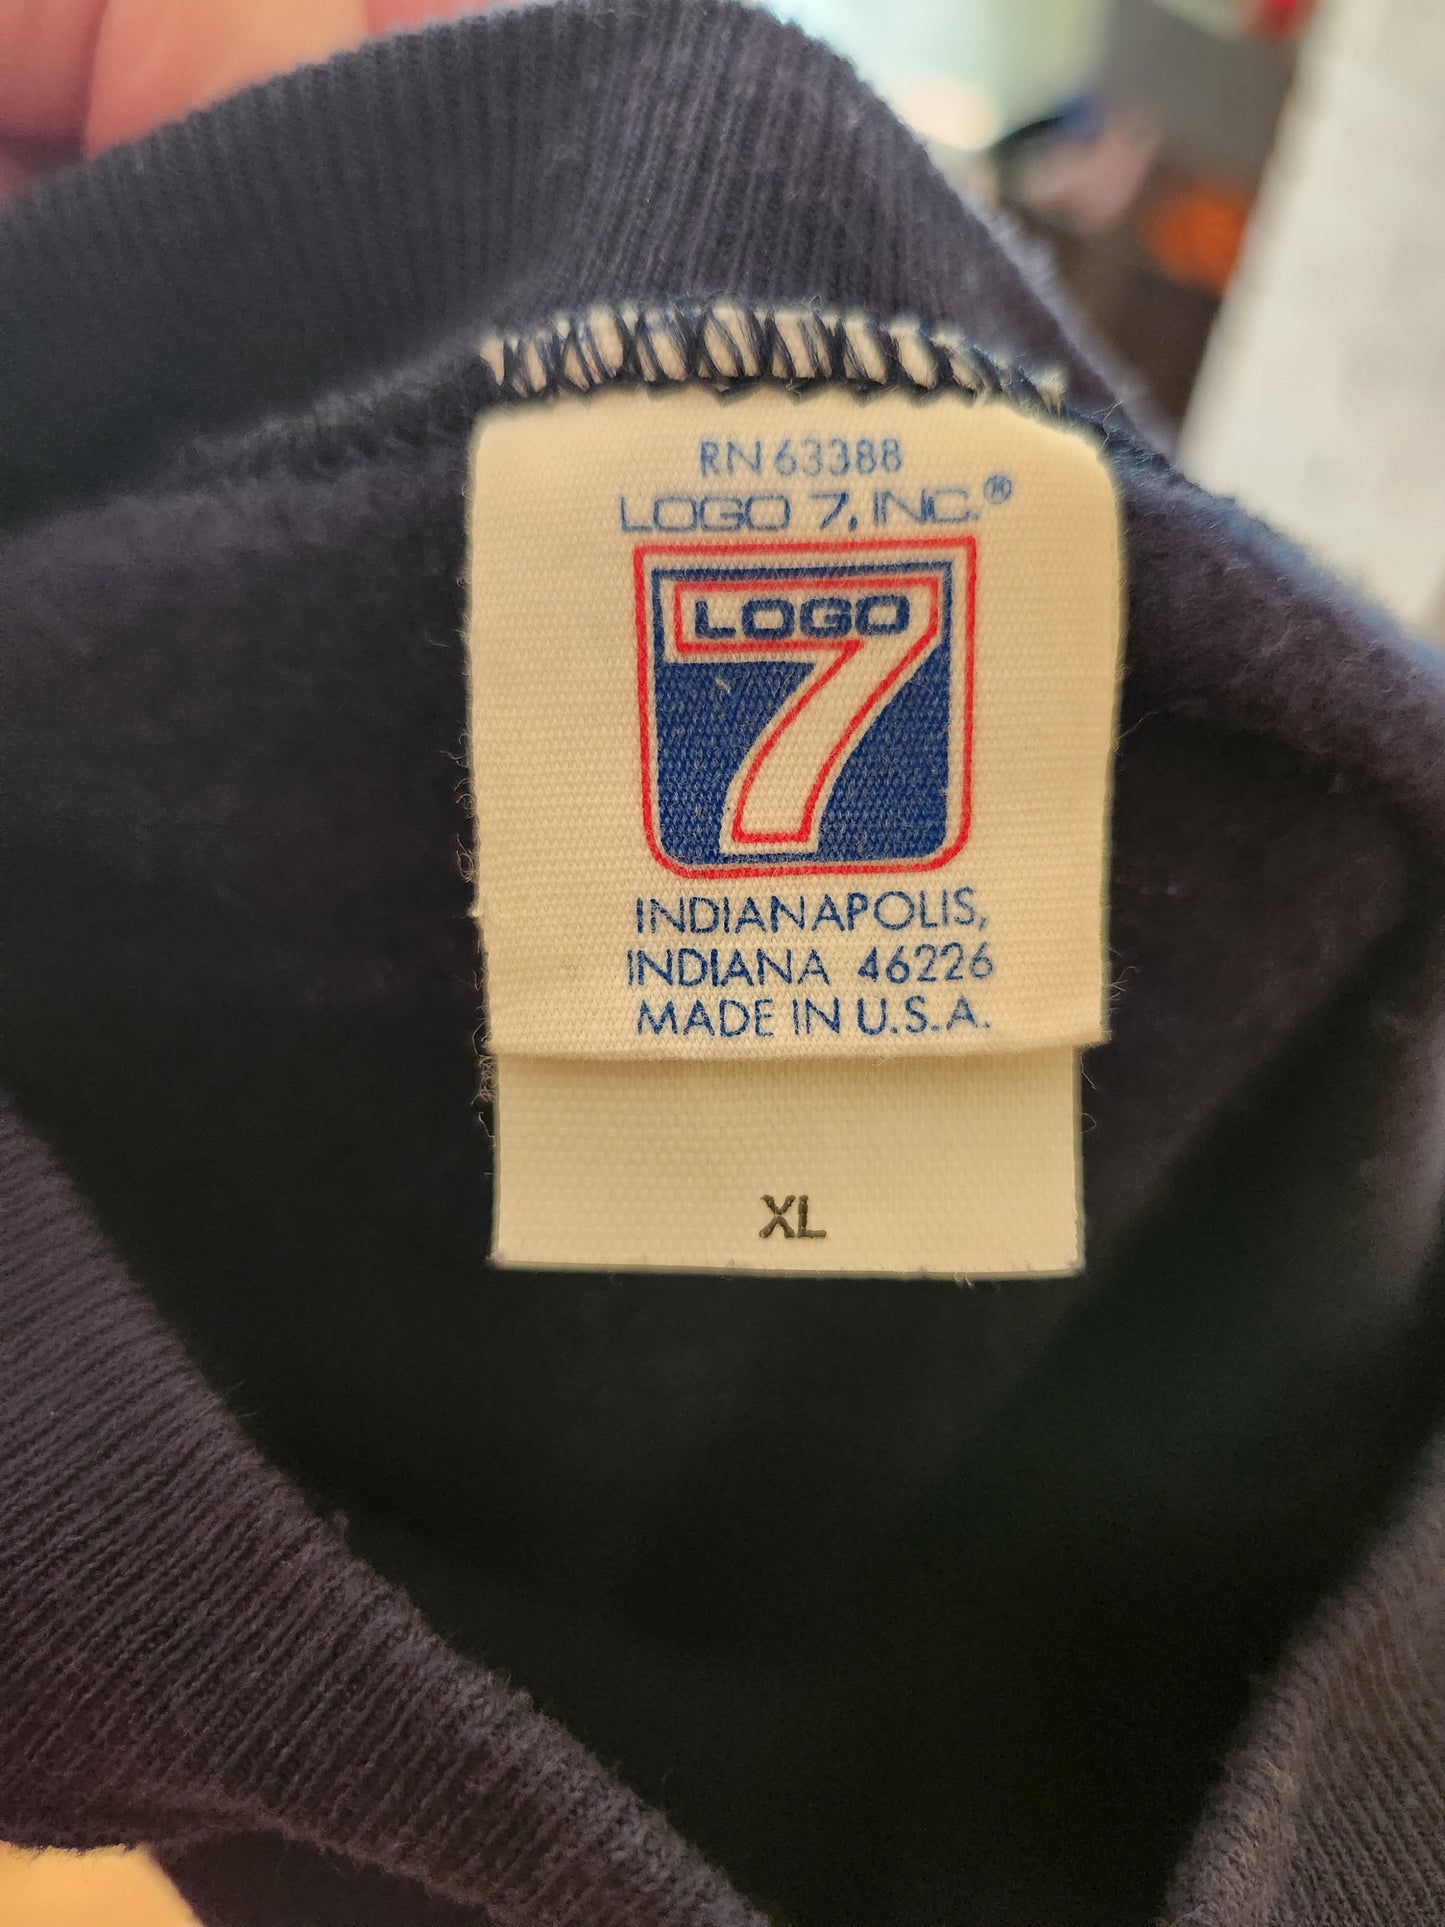 Vintage Dallas Cowboys Sweatshirt by Logo 7